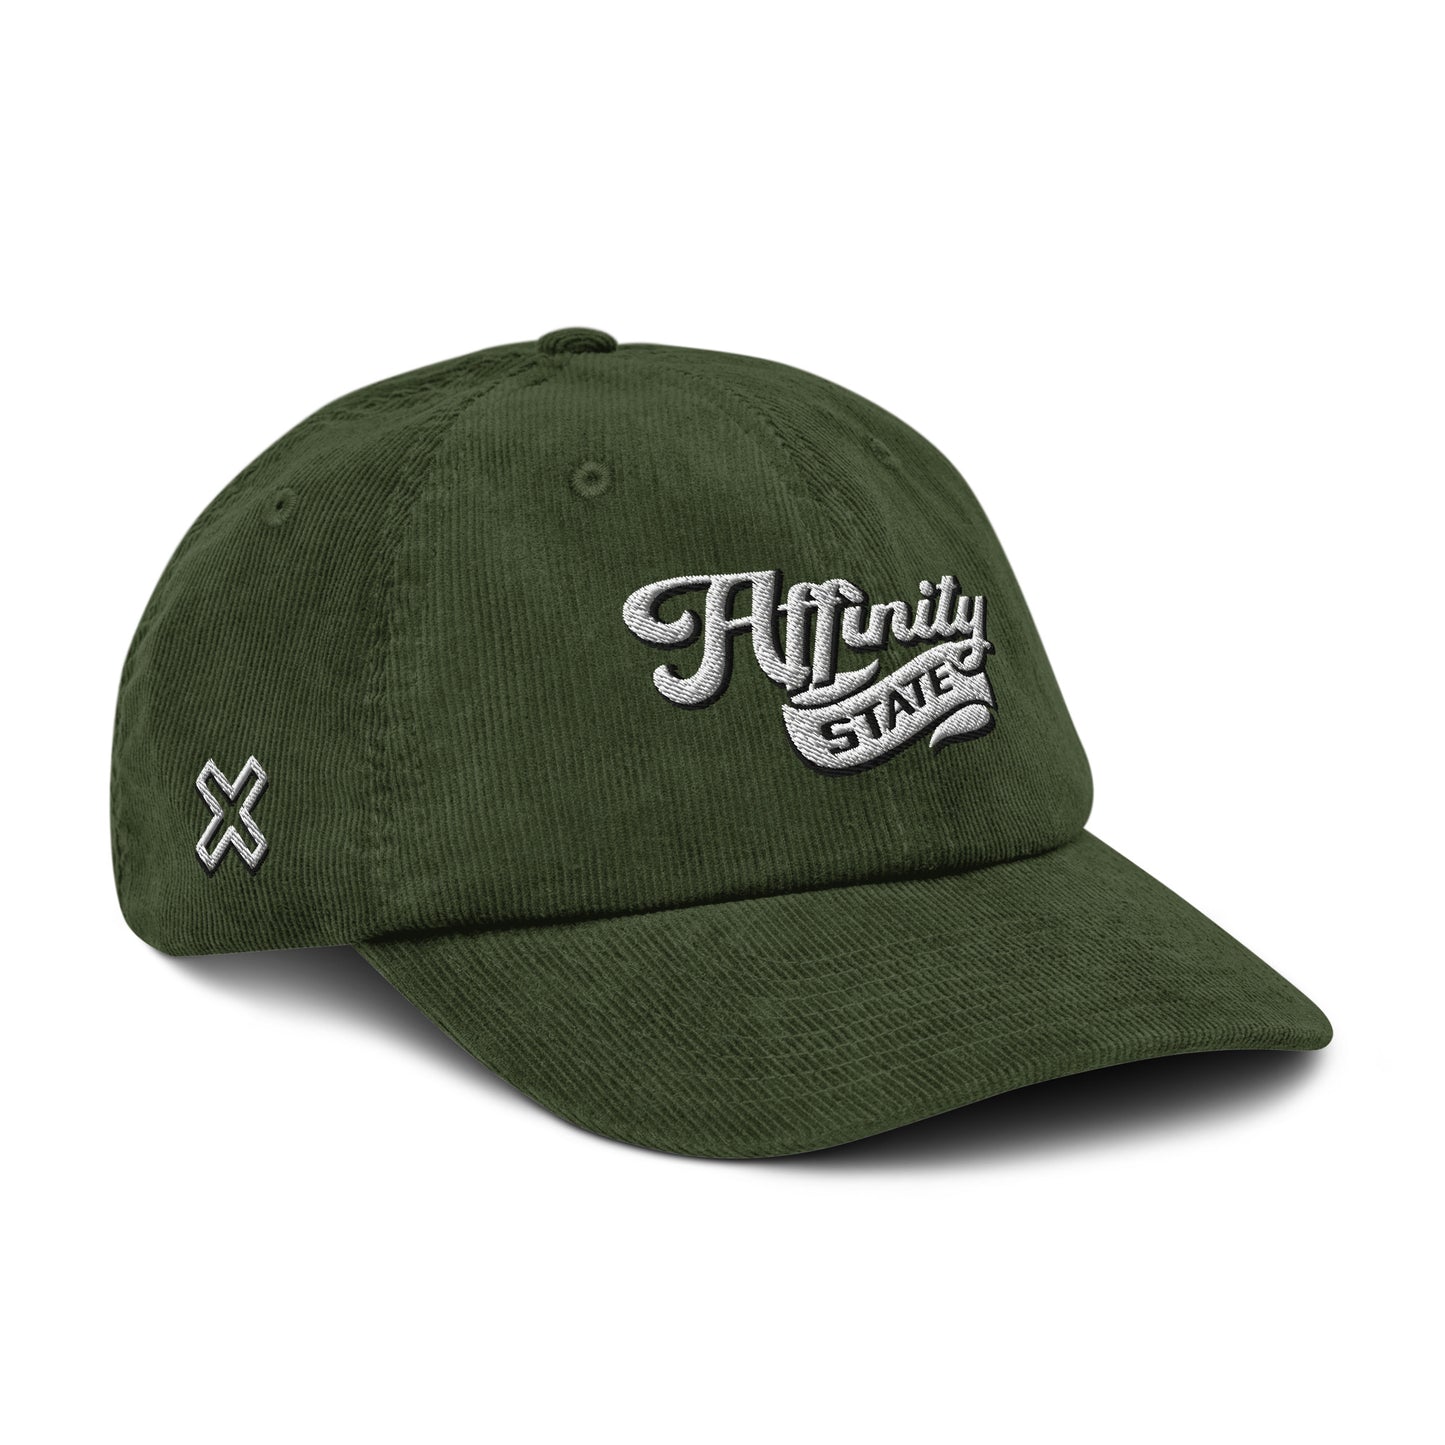 Affinity - Vintage Look Corduroy Hat